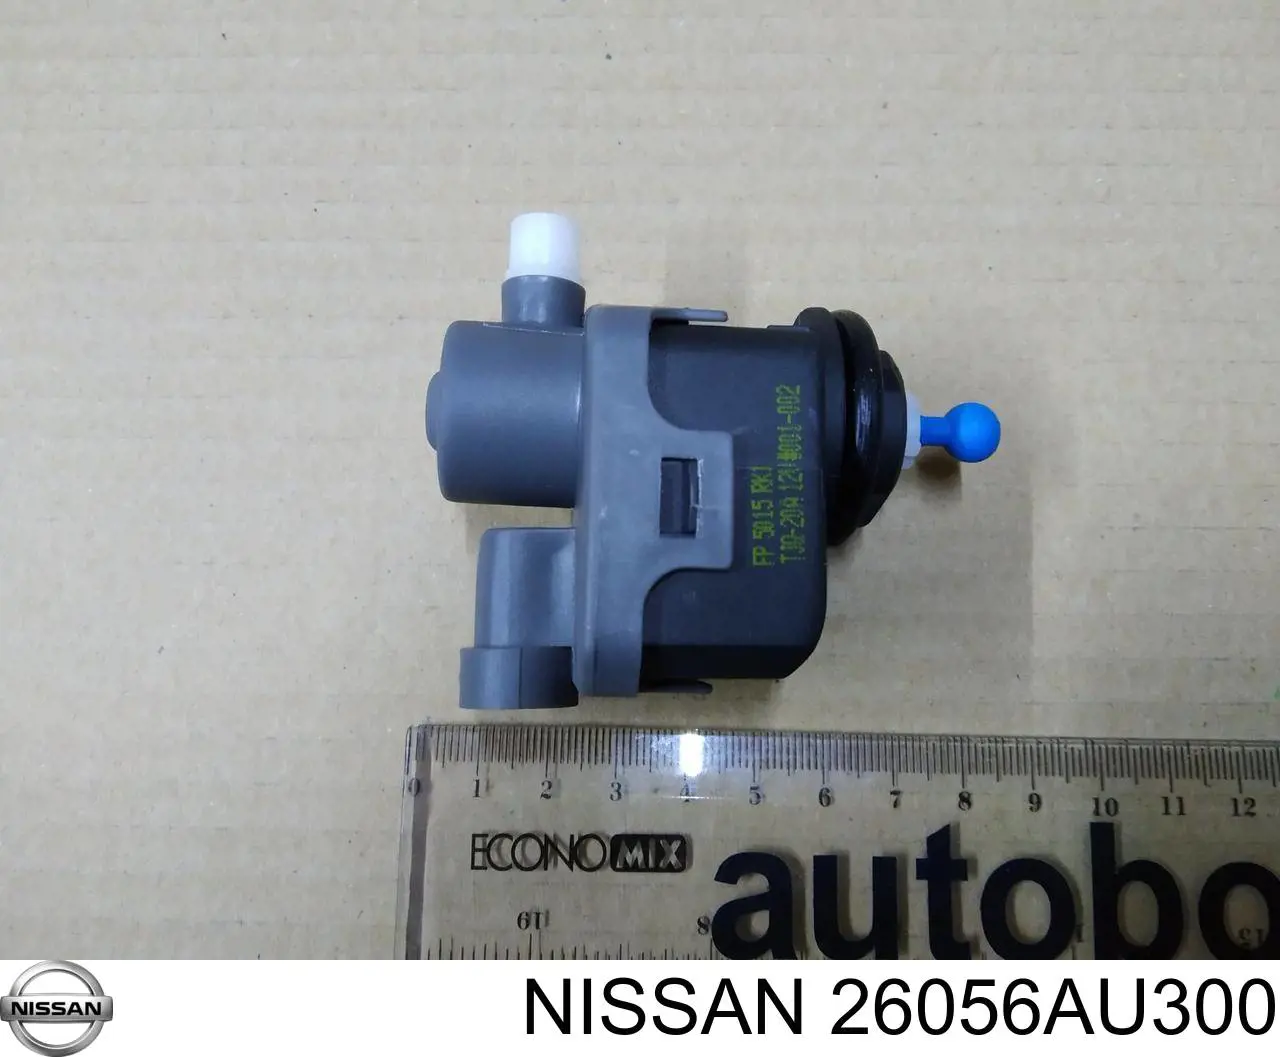 Corretor da luz para Nissan Navara (D40M)